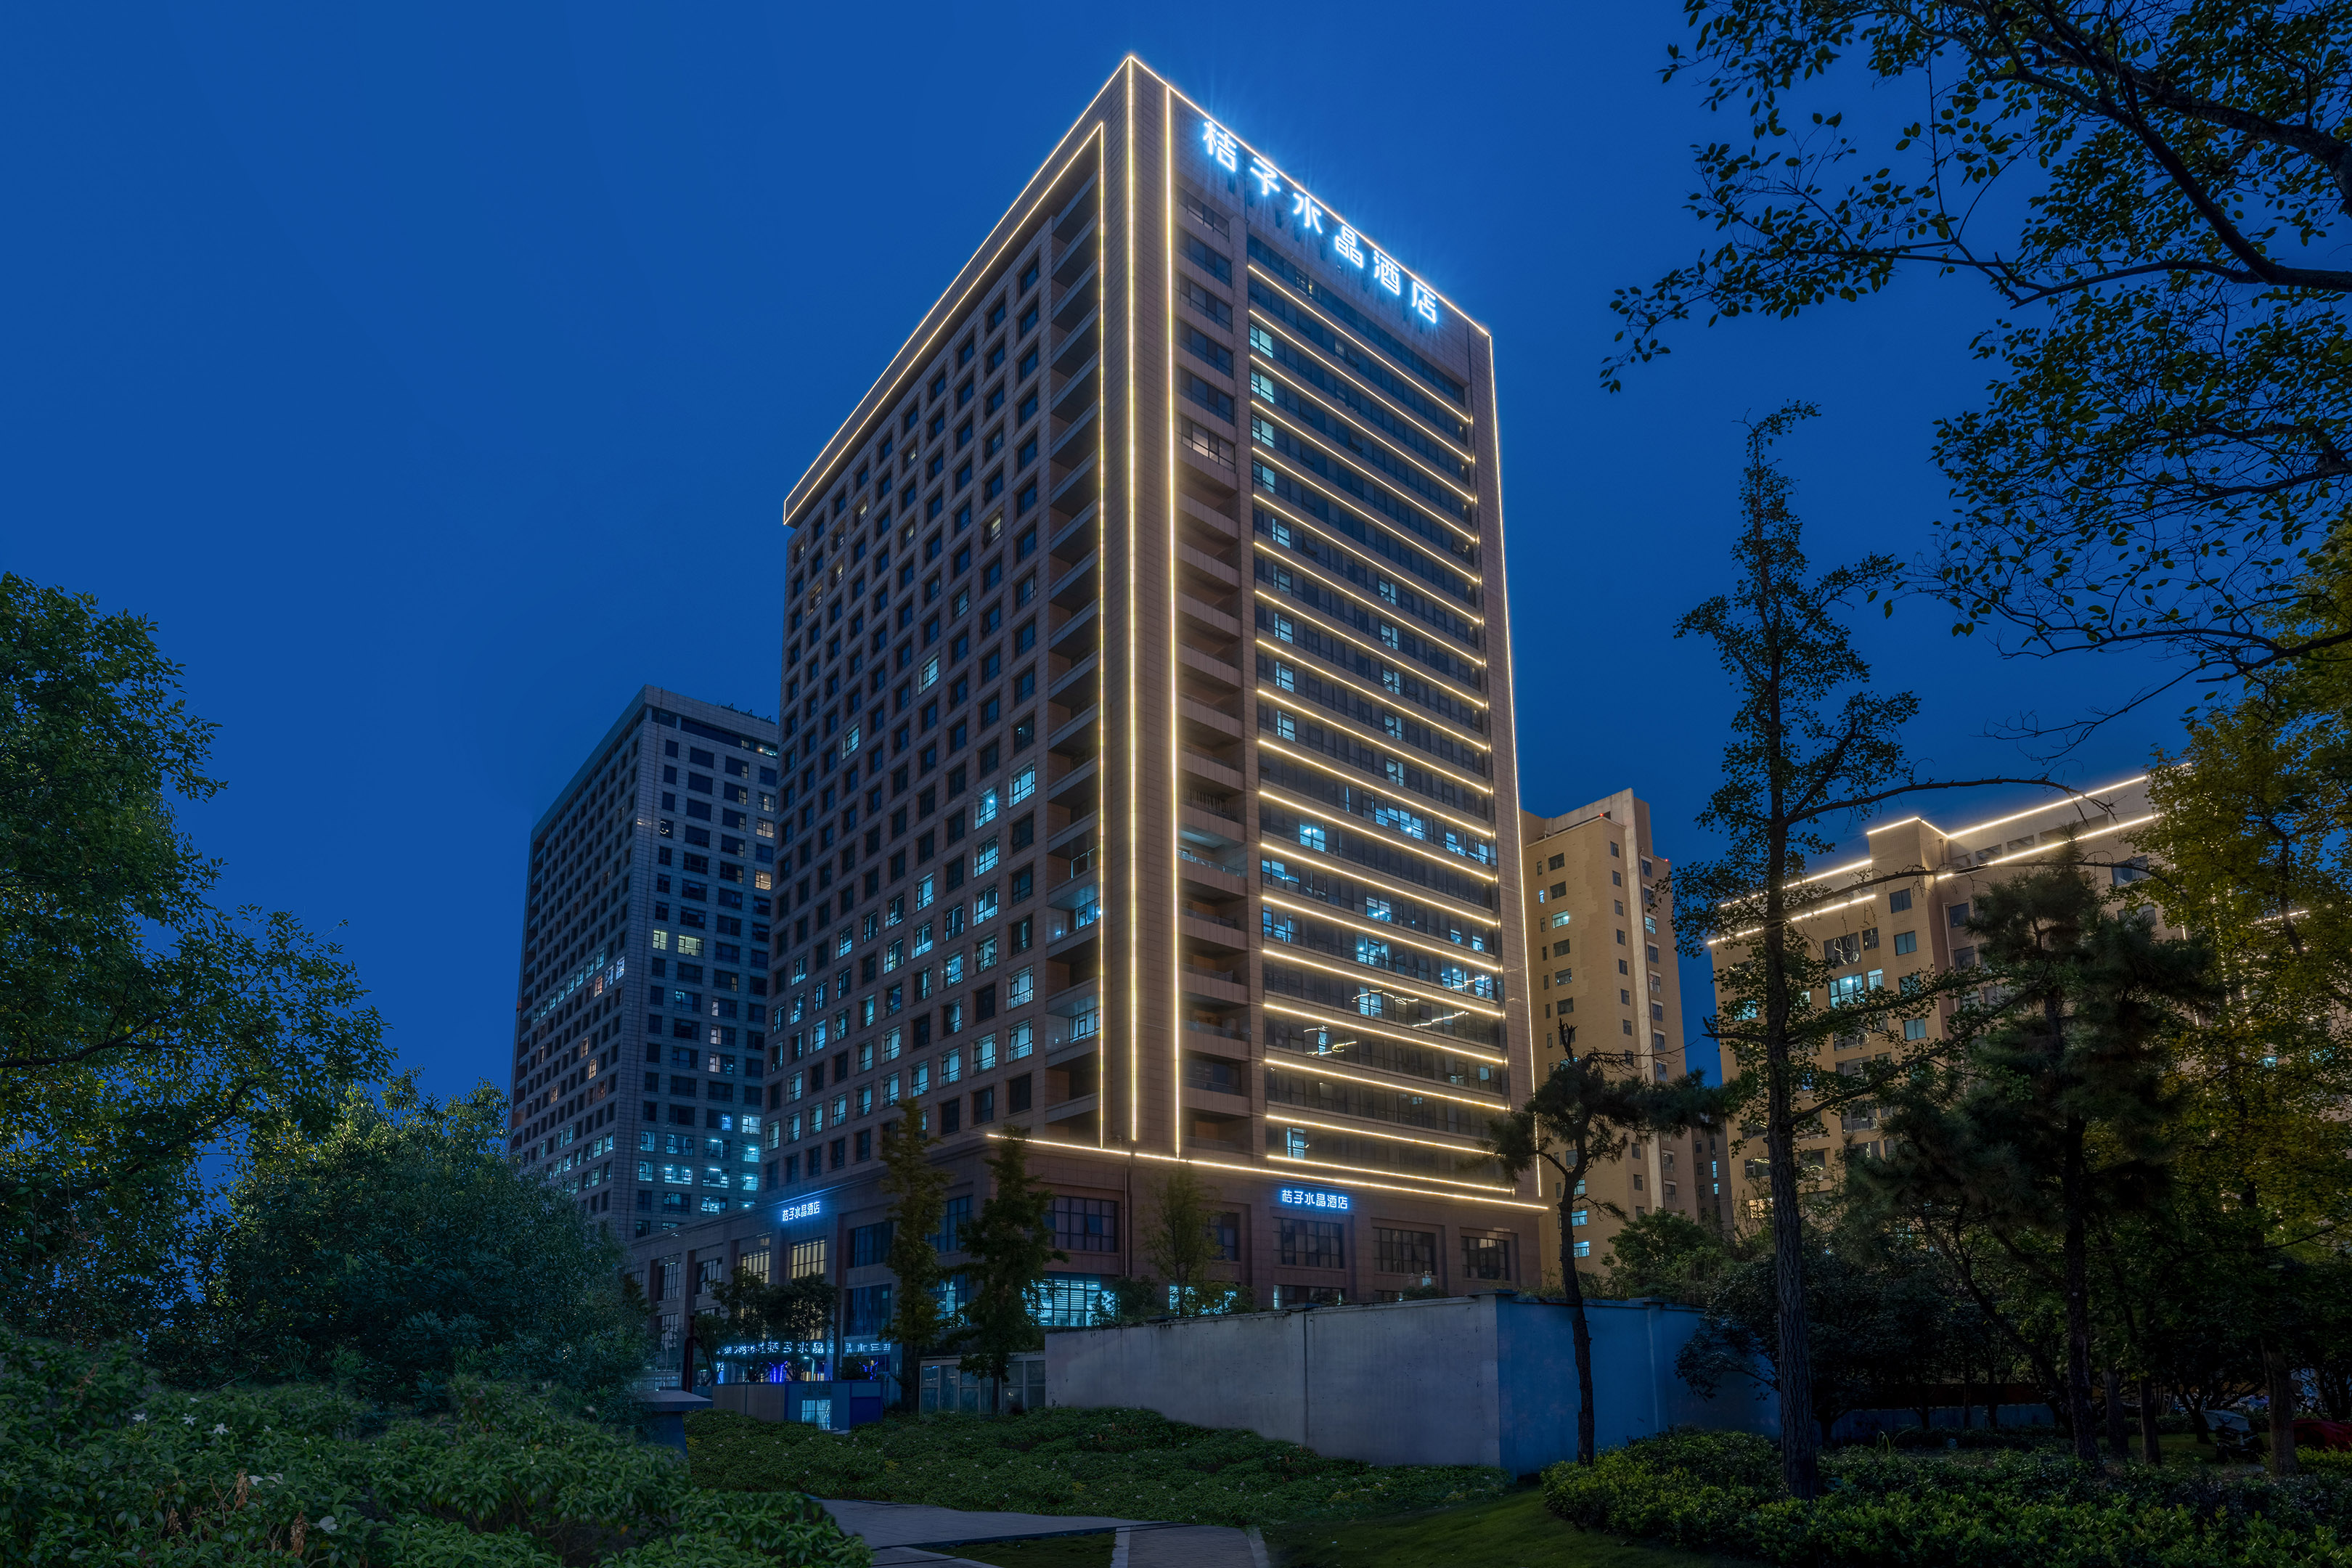 桔子水晶郑州会展中心五栋大楼酒店